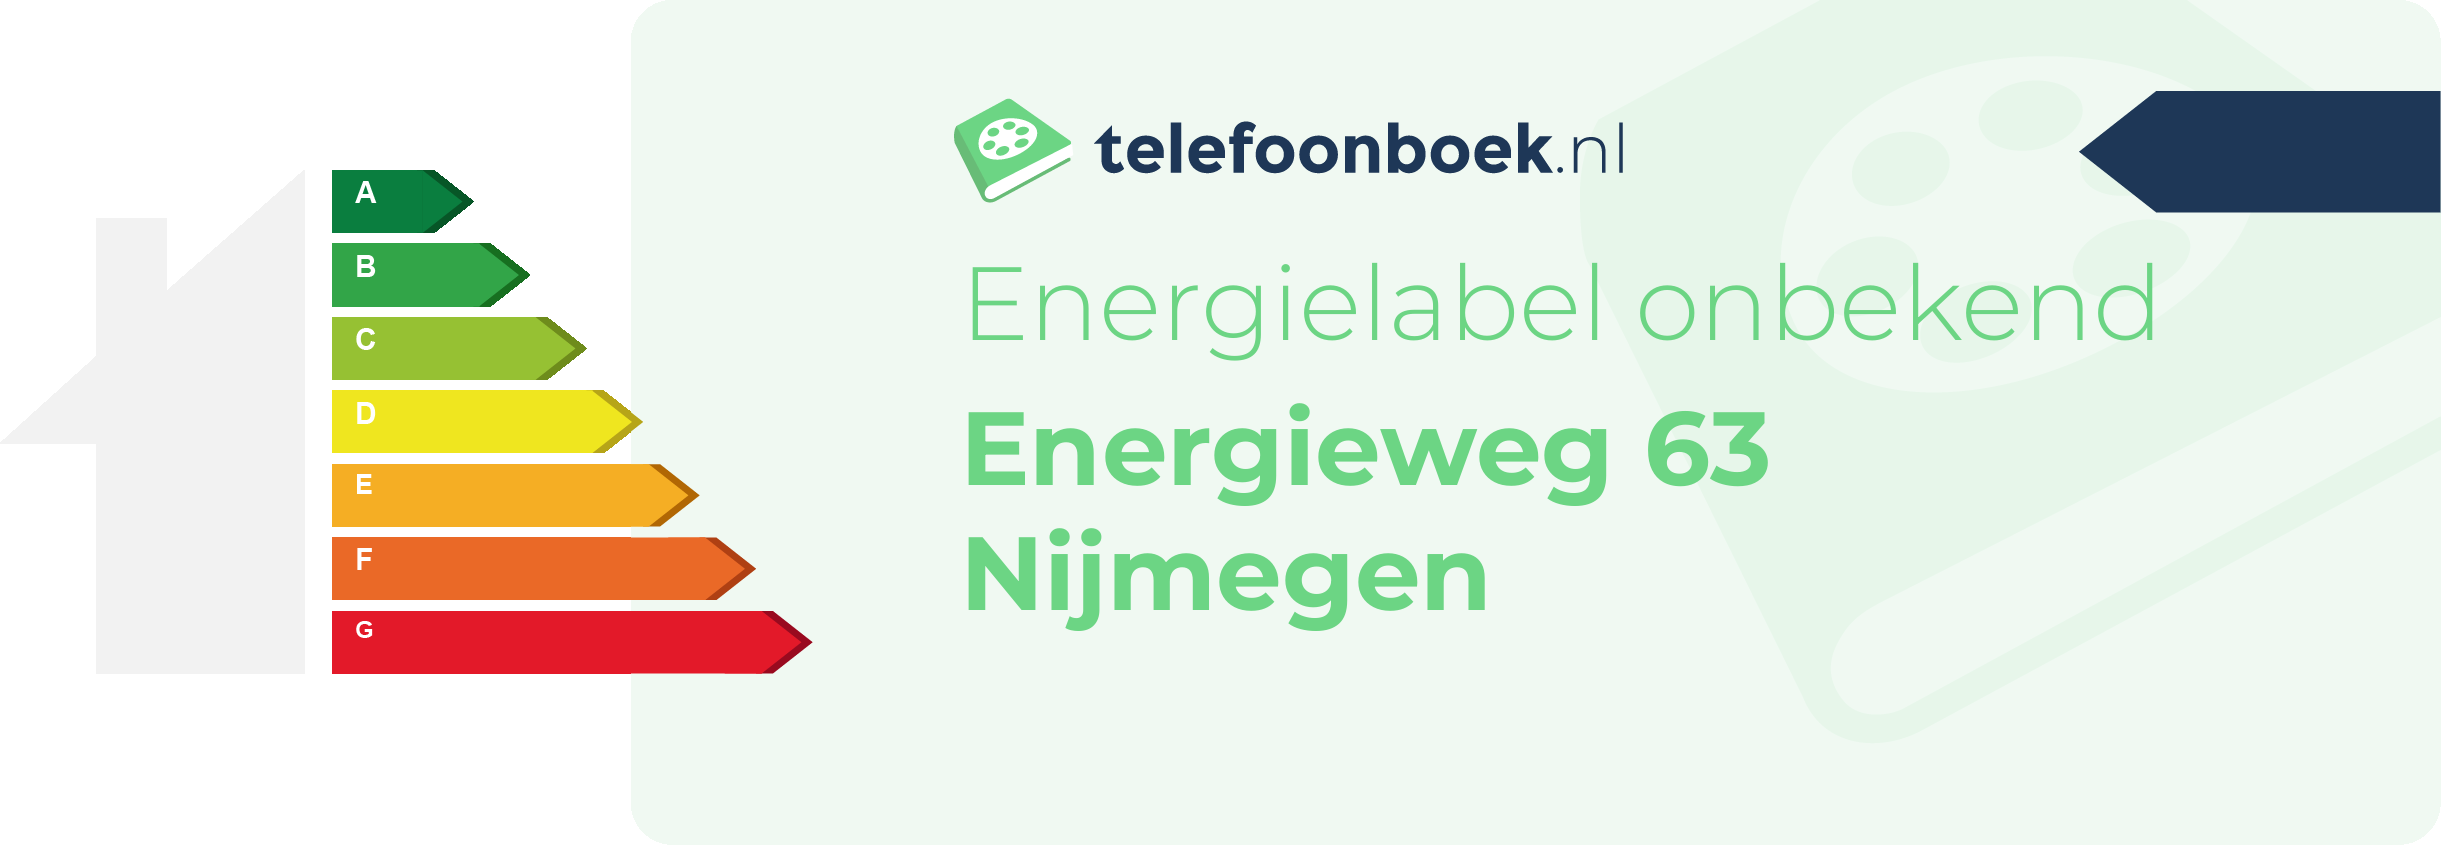 Energielabel Energieweg 63 Nijmegen